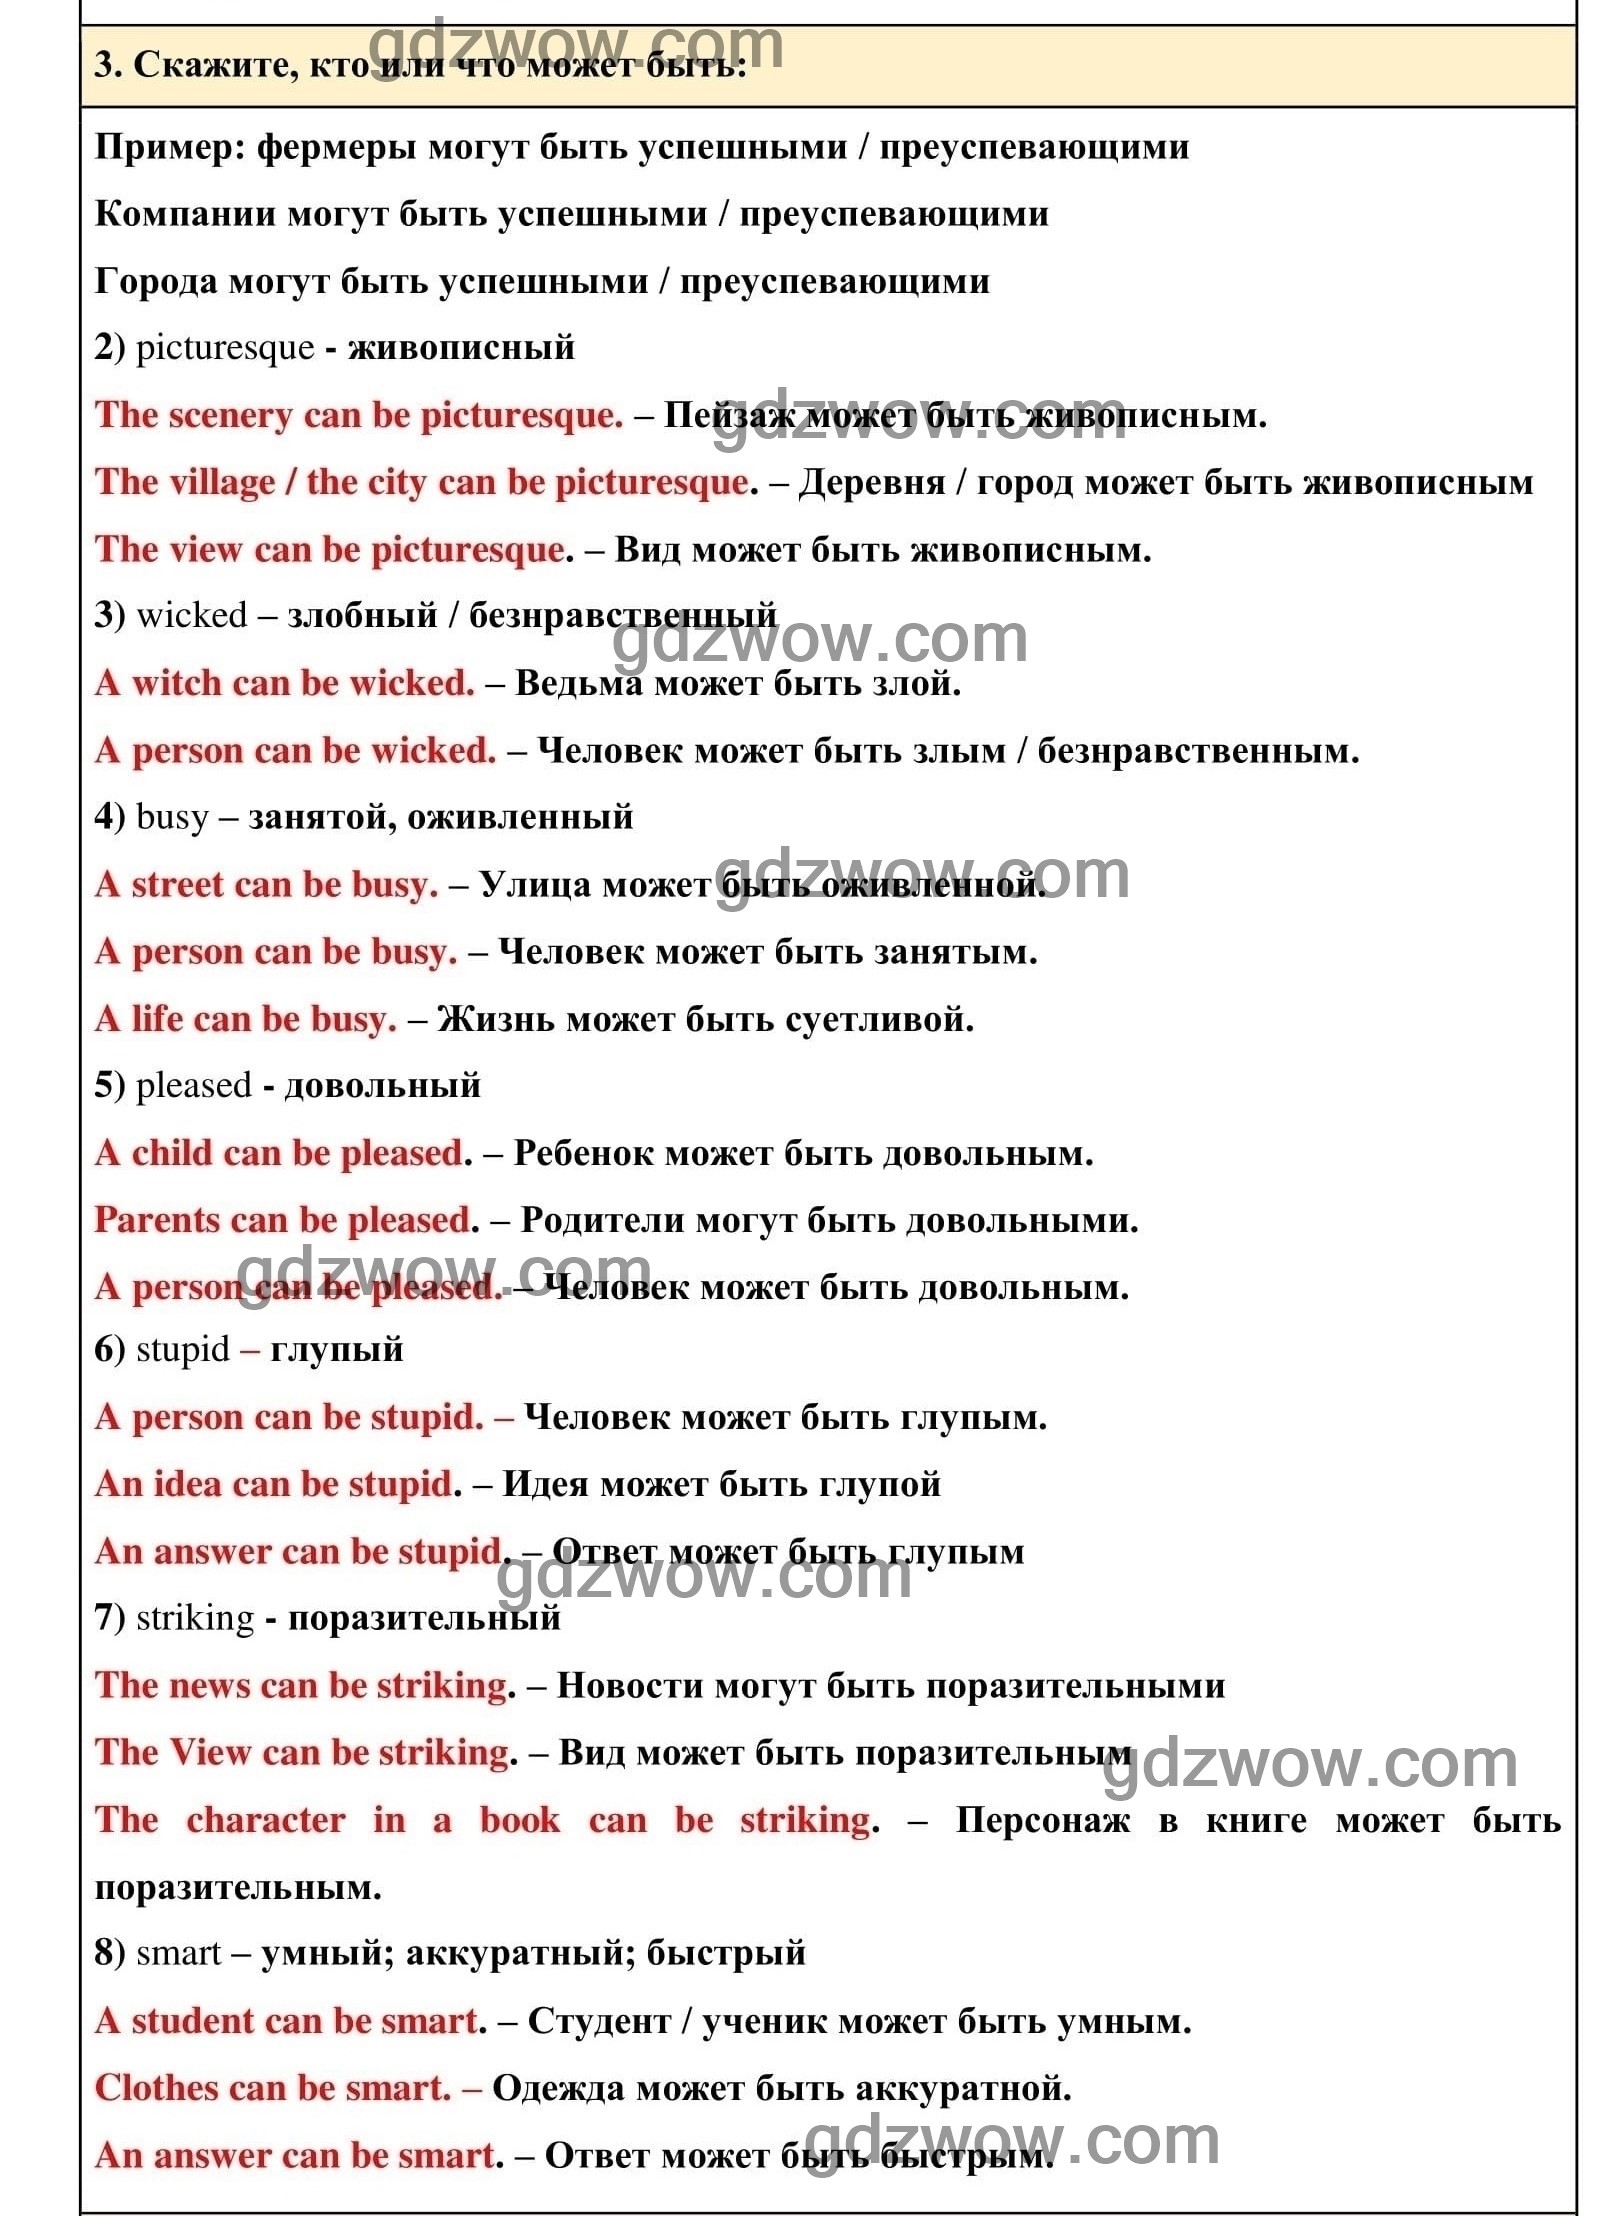 Номер 3 - ГДЗ по Английскому языку для 6 класса Учебник Афанасьева, Михеева. Unit 14. (решебник) - GDZwow